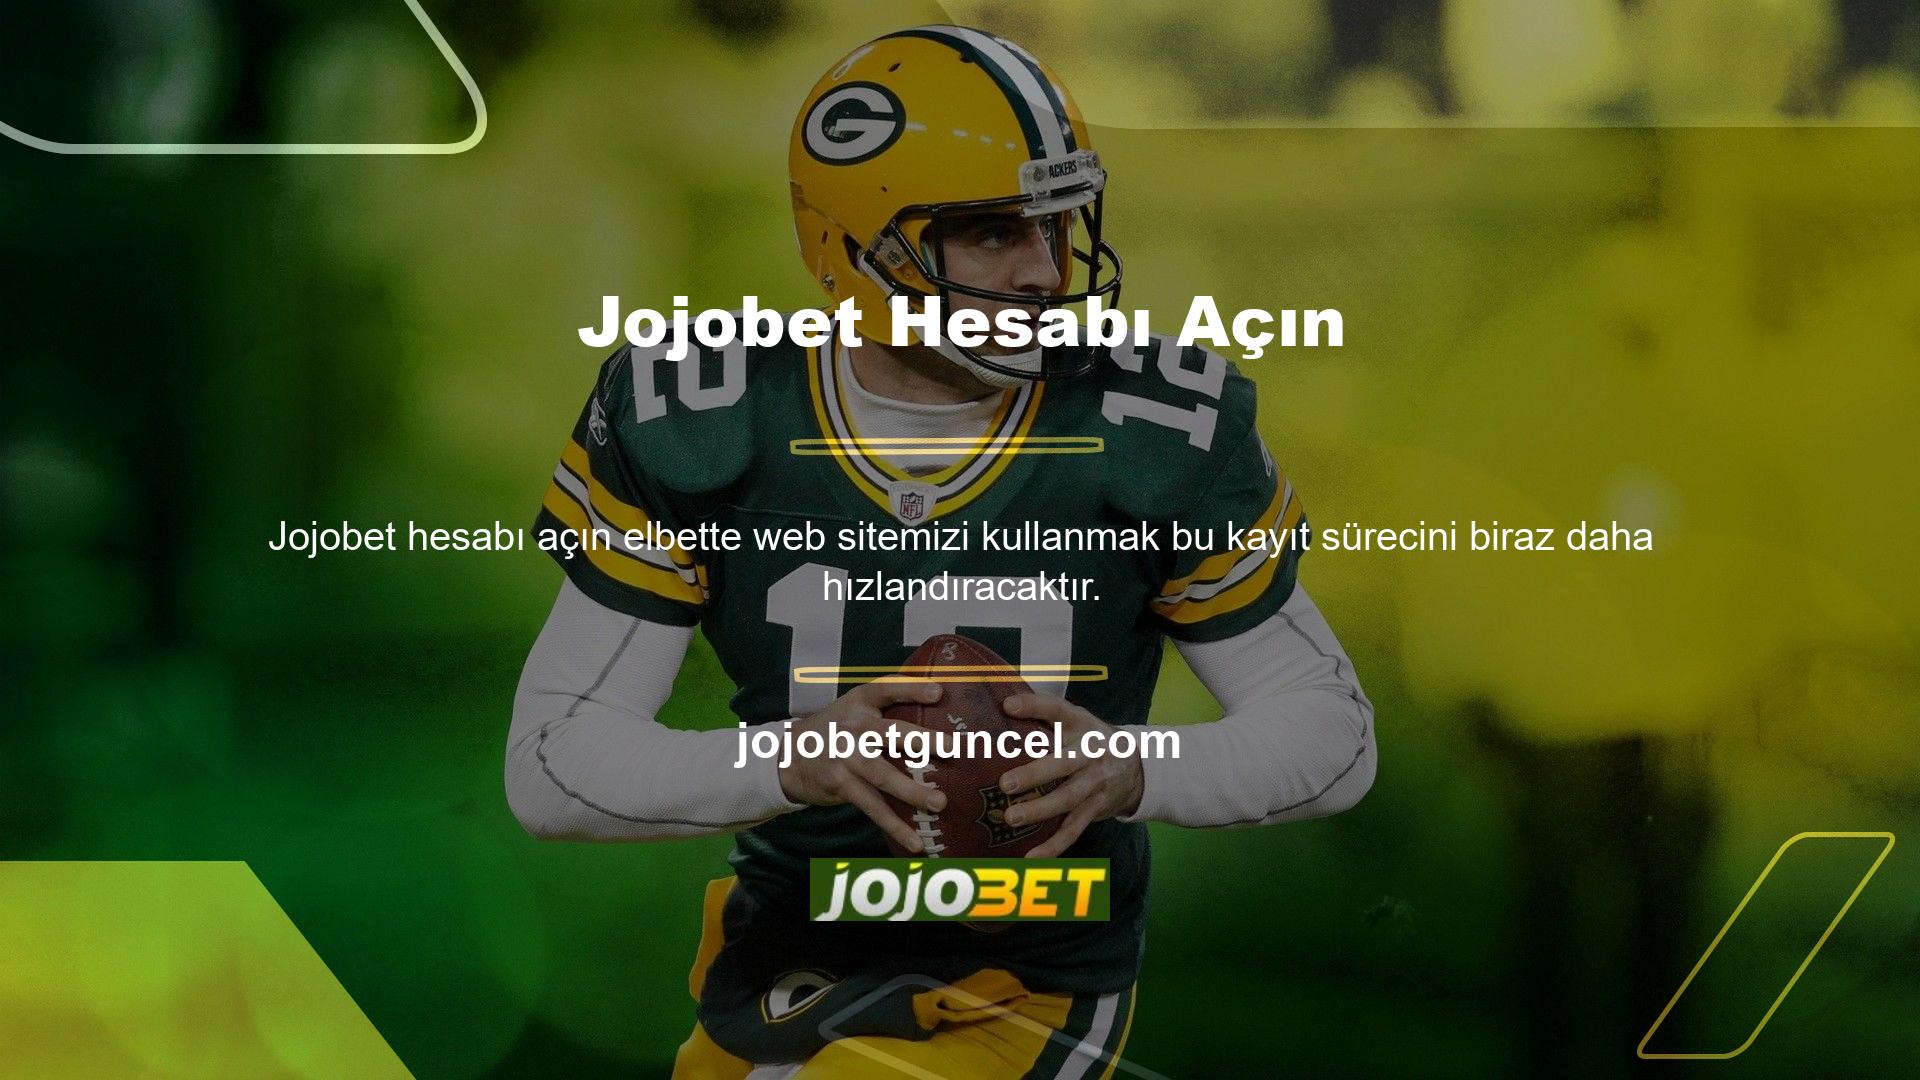 Web sitemizde Jojobet web sitesine erişmenizi sağlayan bir sekme bulunmaktadır